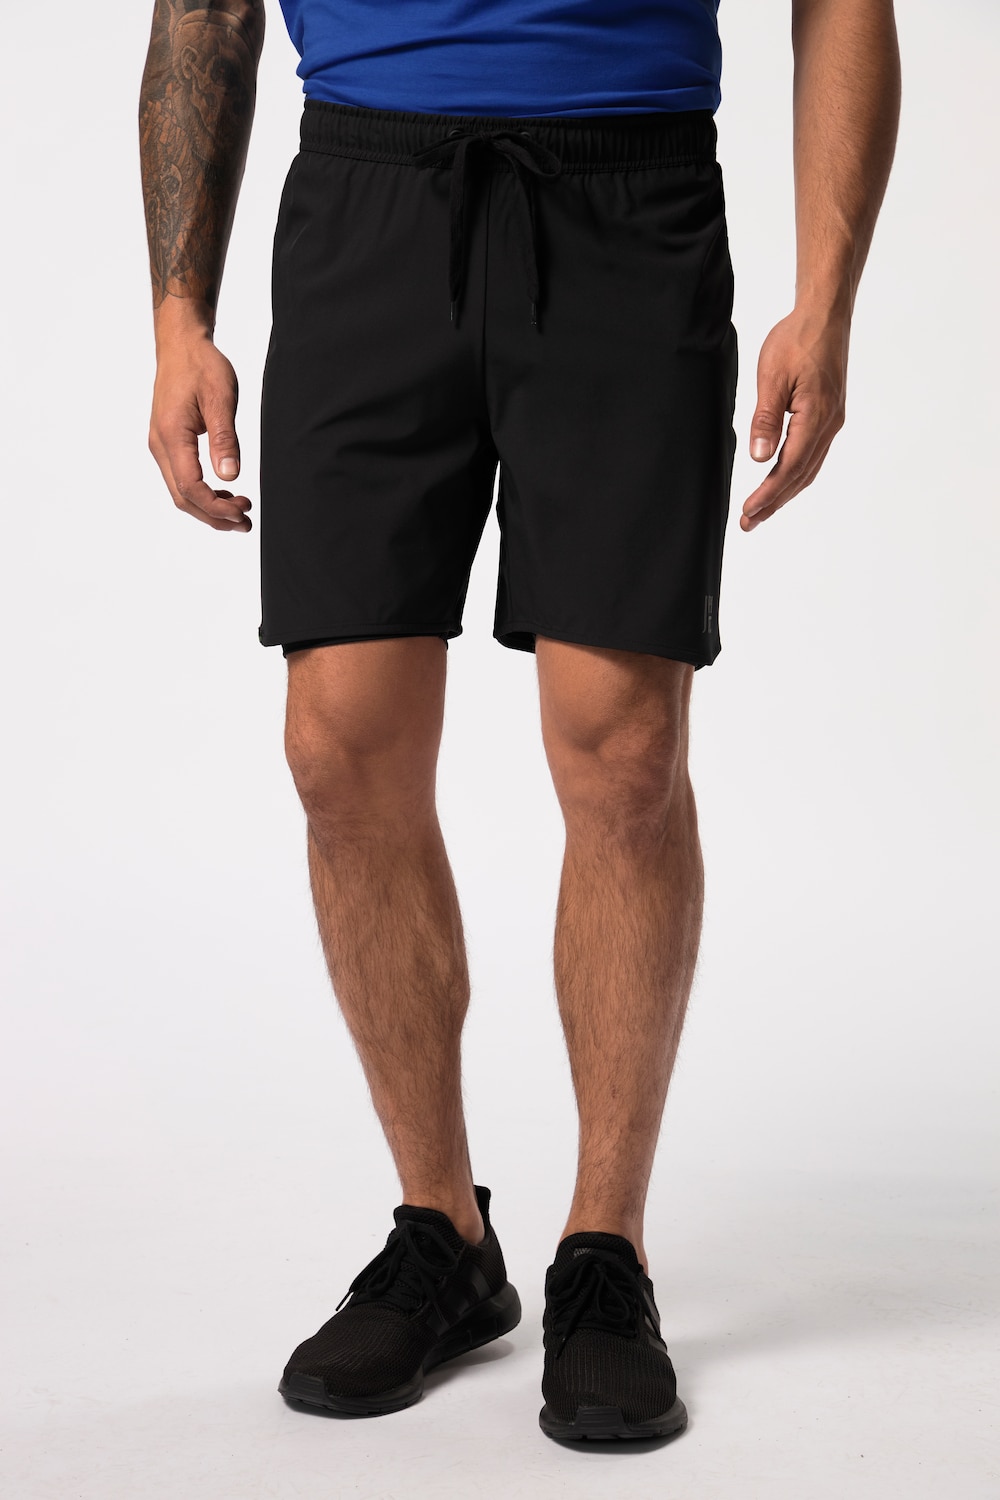 grandes tailles pantalon de sport jay-pi flexnamic®, femmes, noir, taille: 5xl, polyester/fibres synthétiques/élasthanne, jay-pi